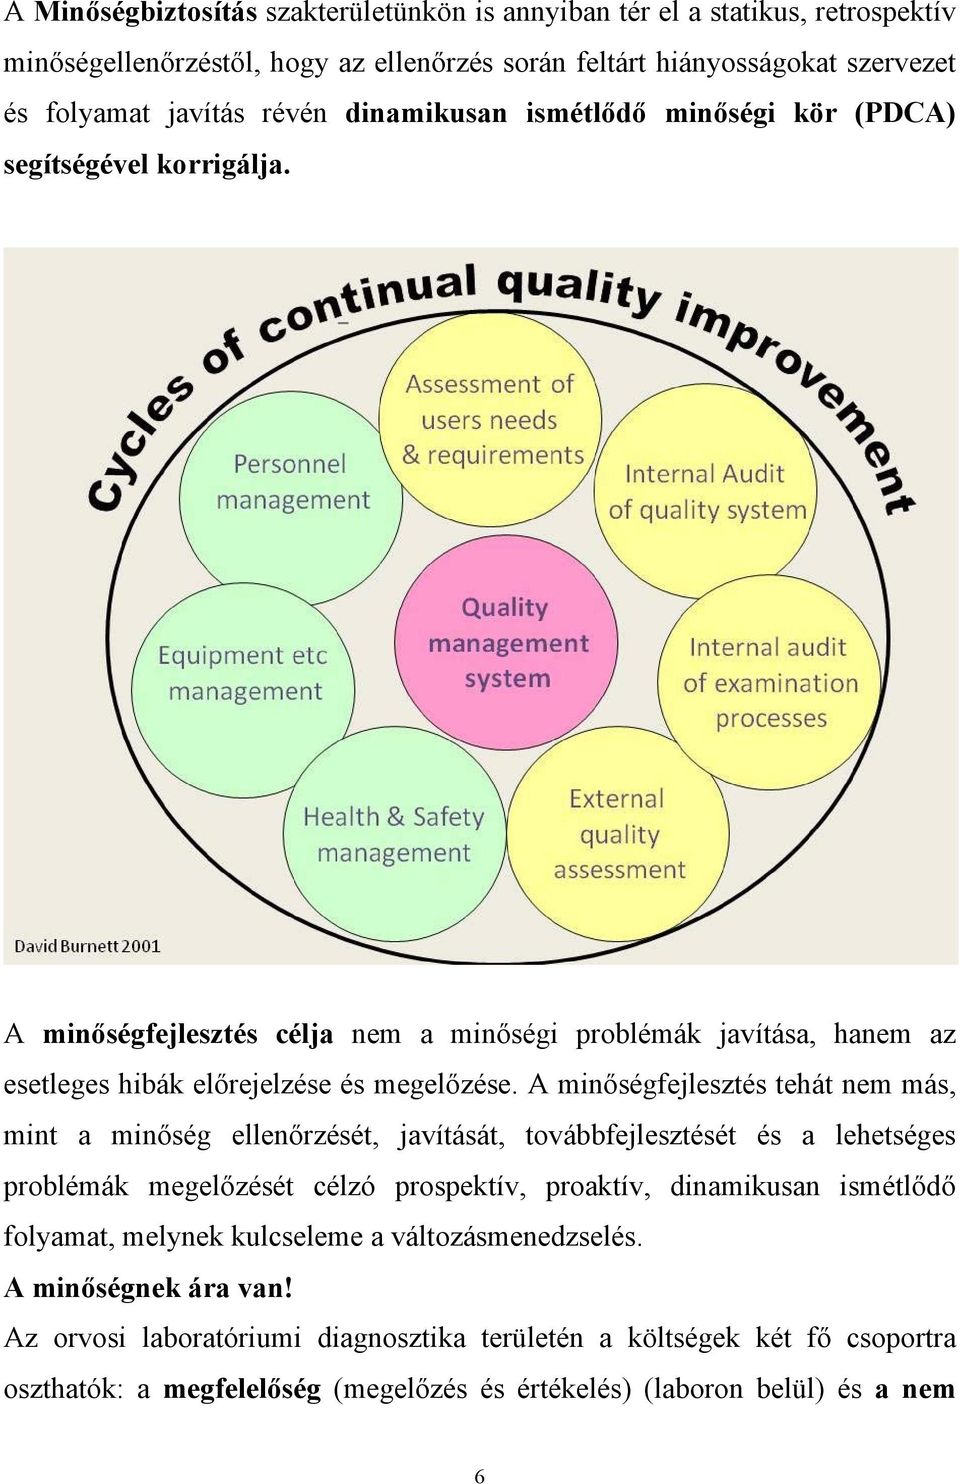 A minőségfejlesztés tehát nem más, mint a minőség ellenőrzését, javítását, továbbfejlesztését és a lehetséges problémák megelőzését célzó prospektív, proaktív, dinamikusan ismétlődő folyamat,